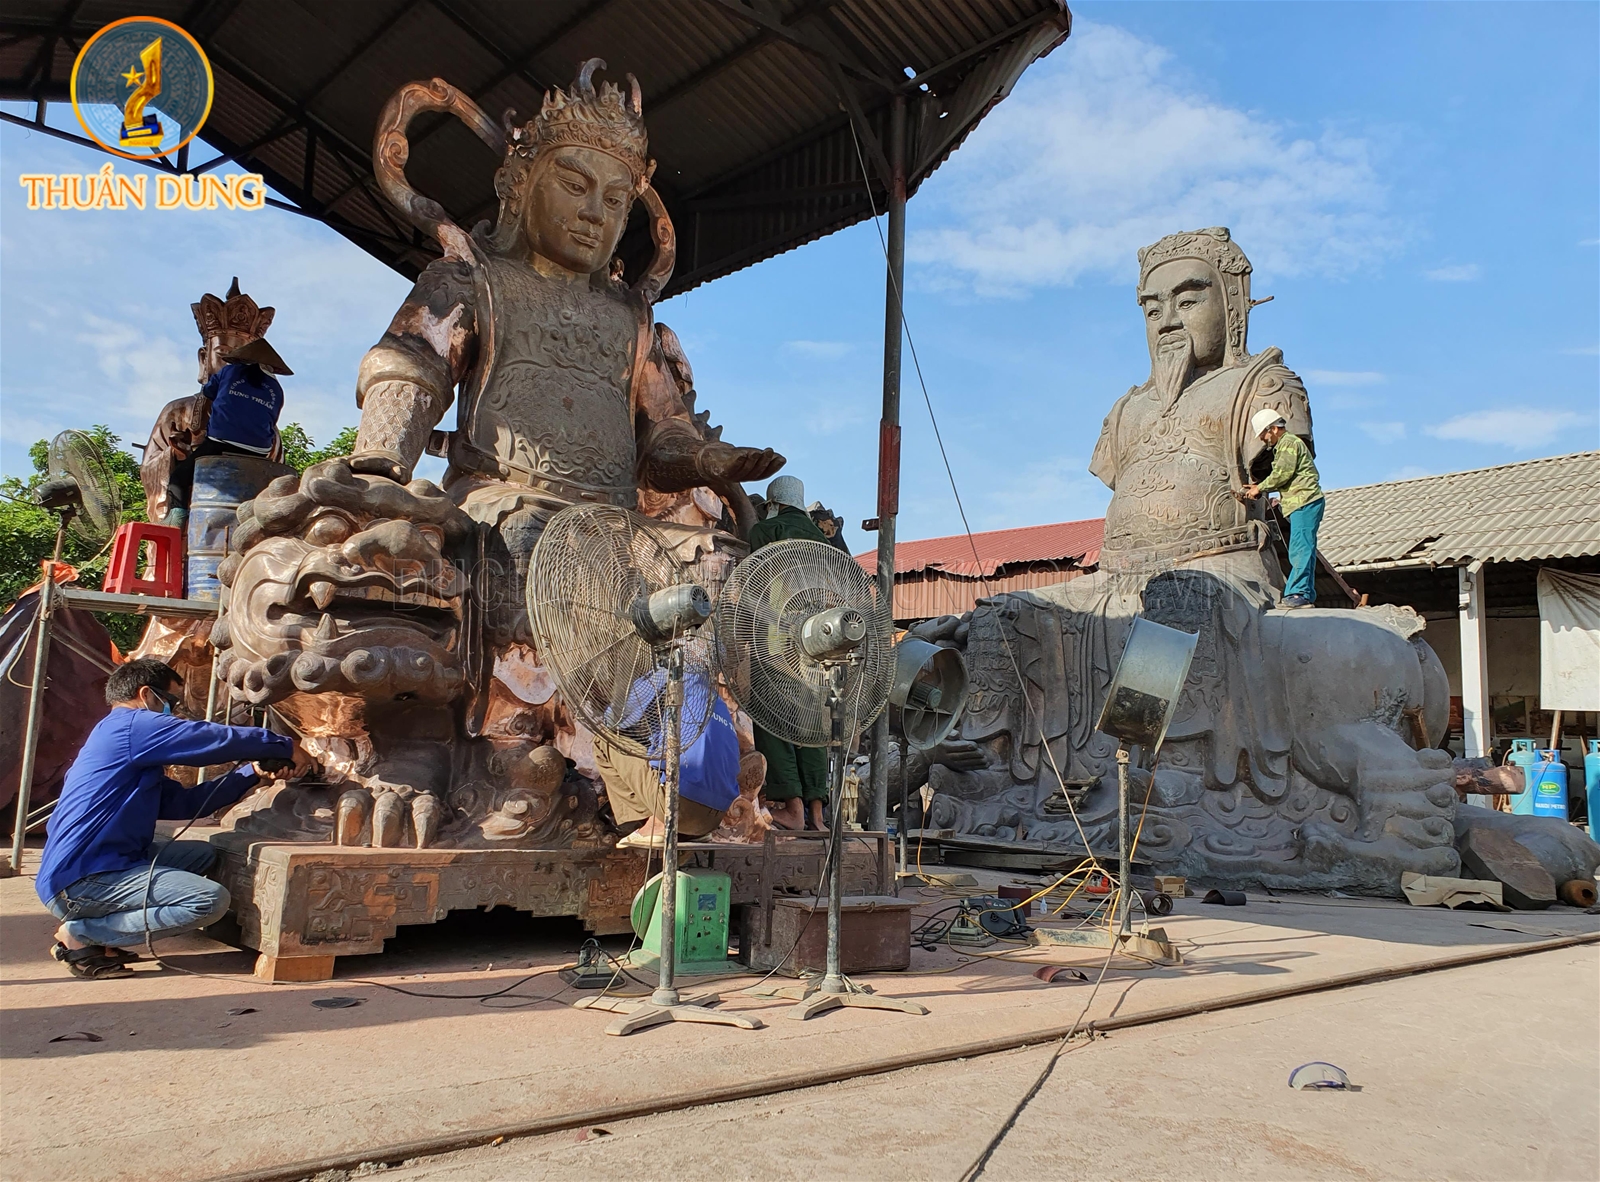 Phật chùa Văn Môn - Bắc Ninh và chùa Lâm Hà - Nghệ An đang được hoàn thiện tại xưởng đúc đồng Thuấn Dung